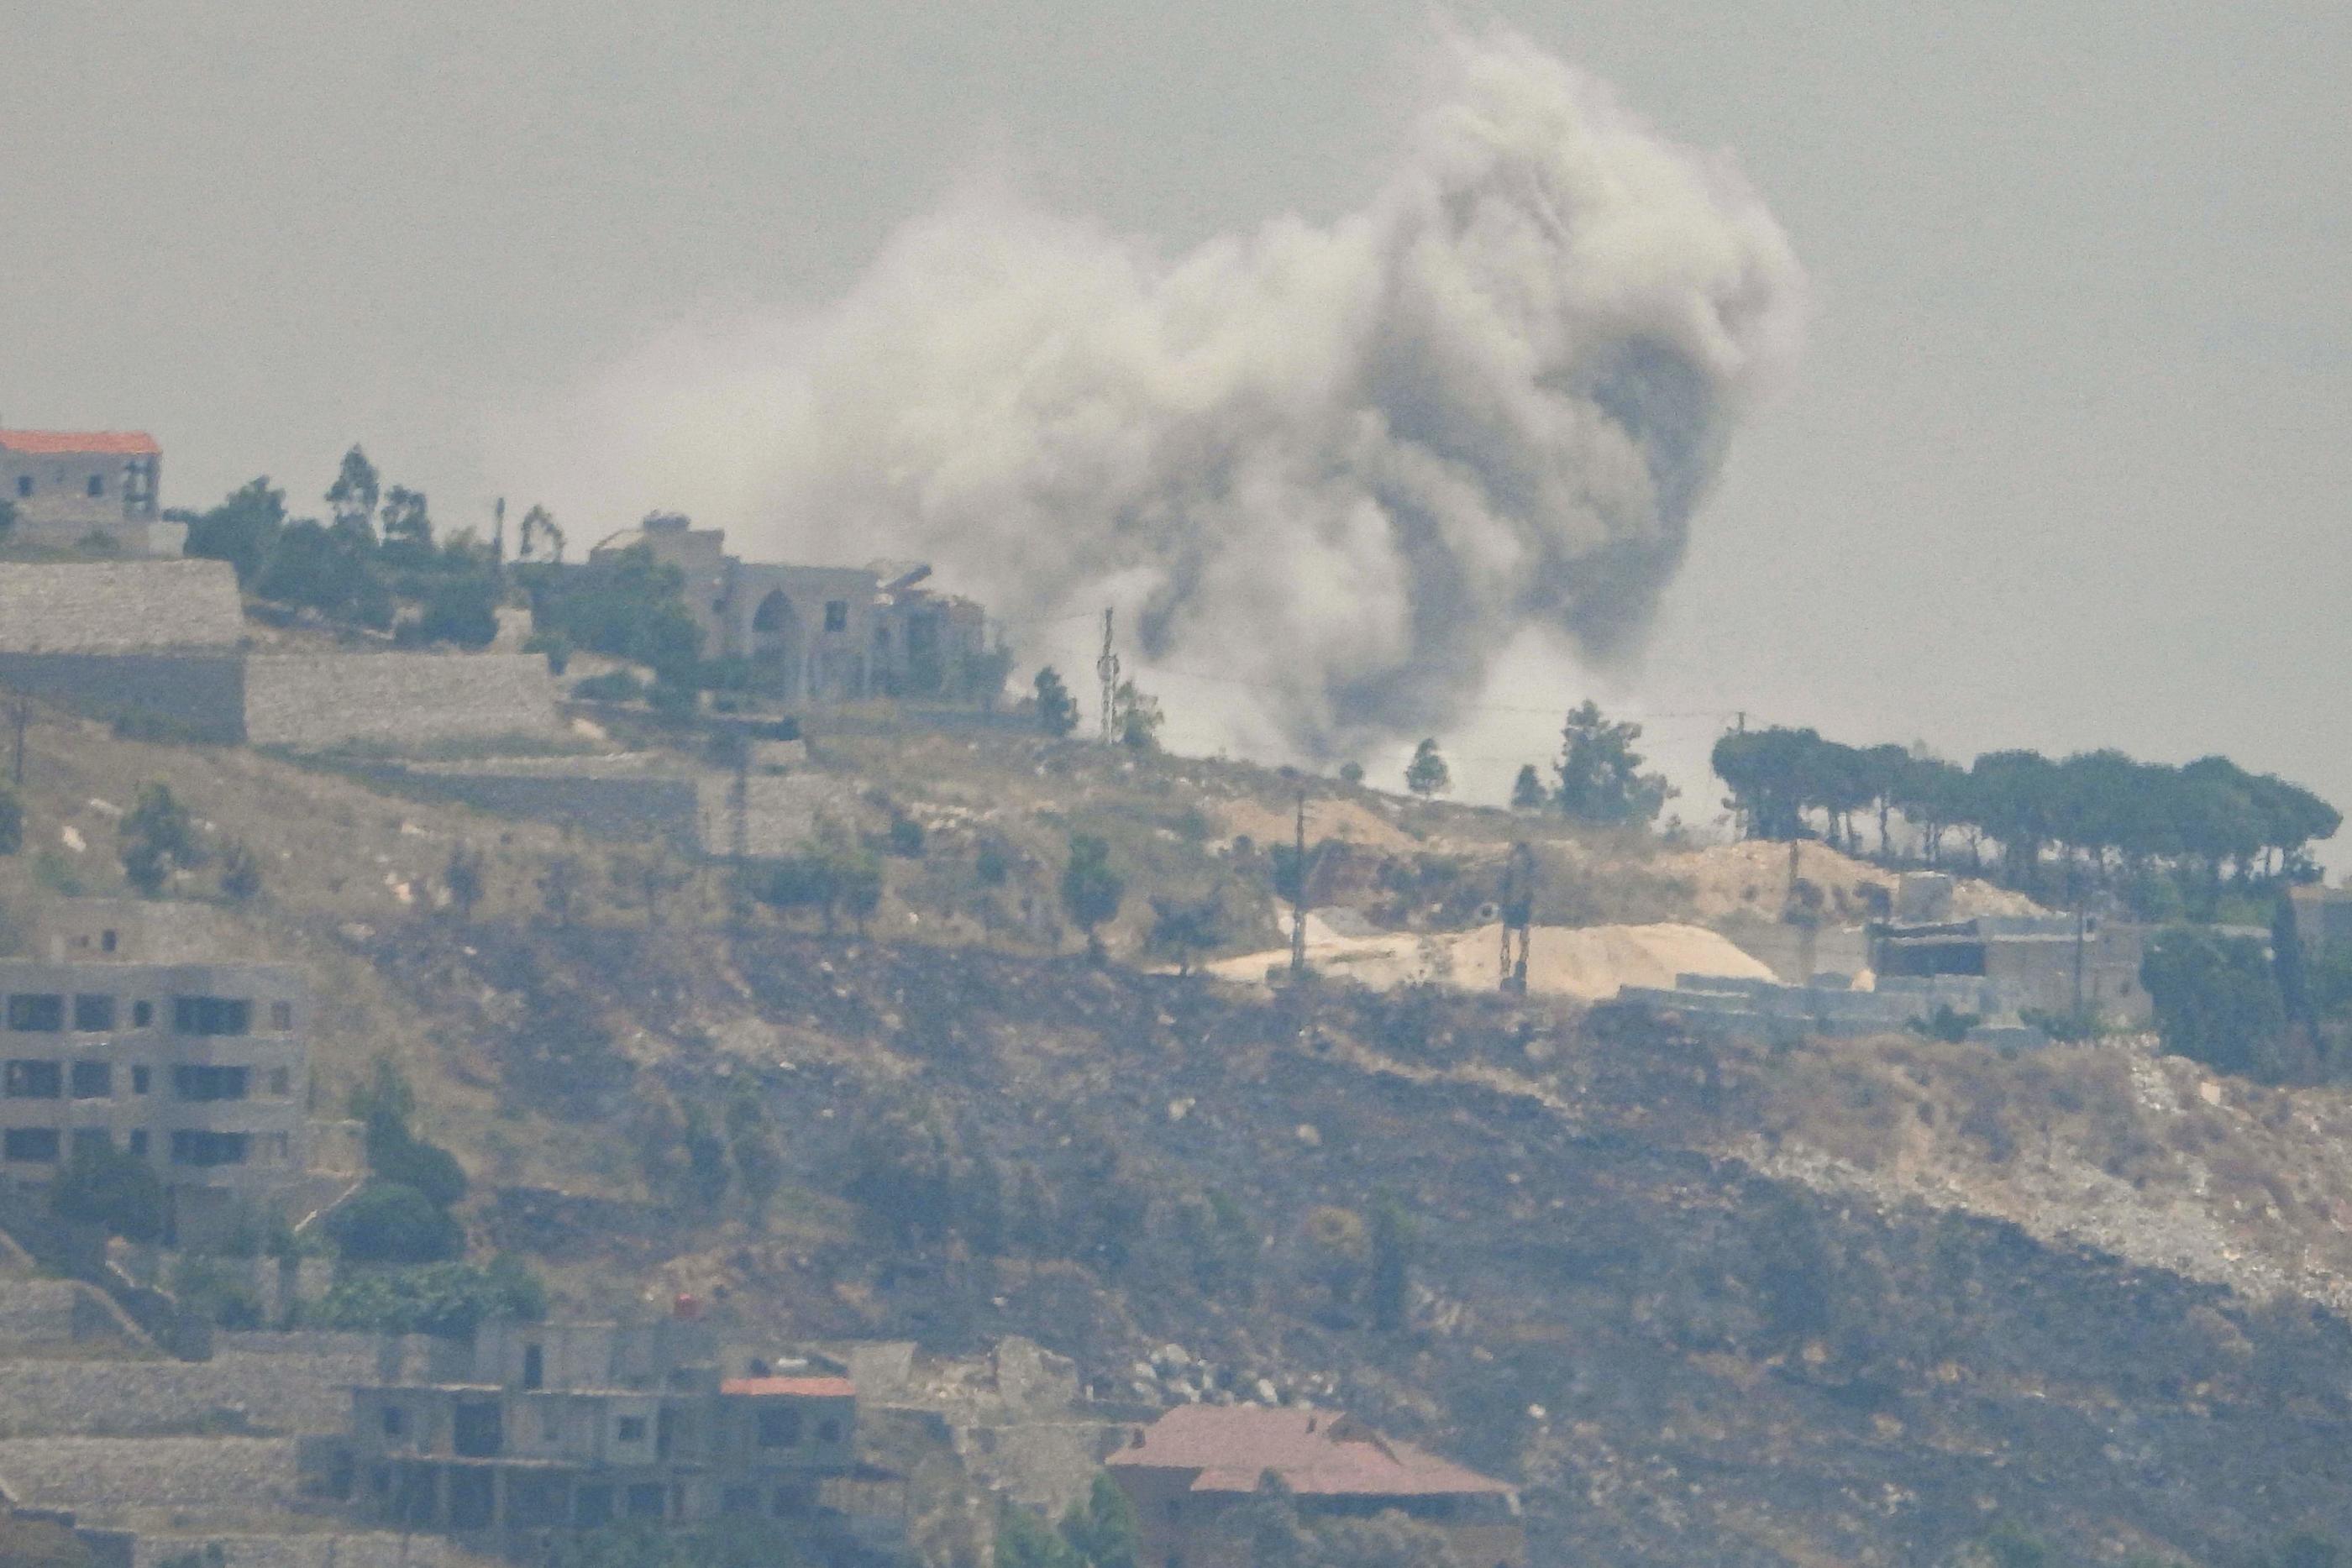 Les échanges de tirs entre l'armée israélienne et le mouvement libanais Hezbollah sont quotidiens à la frontière entre le Liban et Israël. AFP/Rabih DAHER